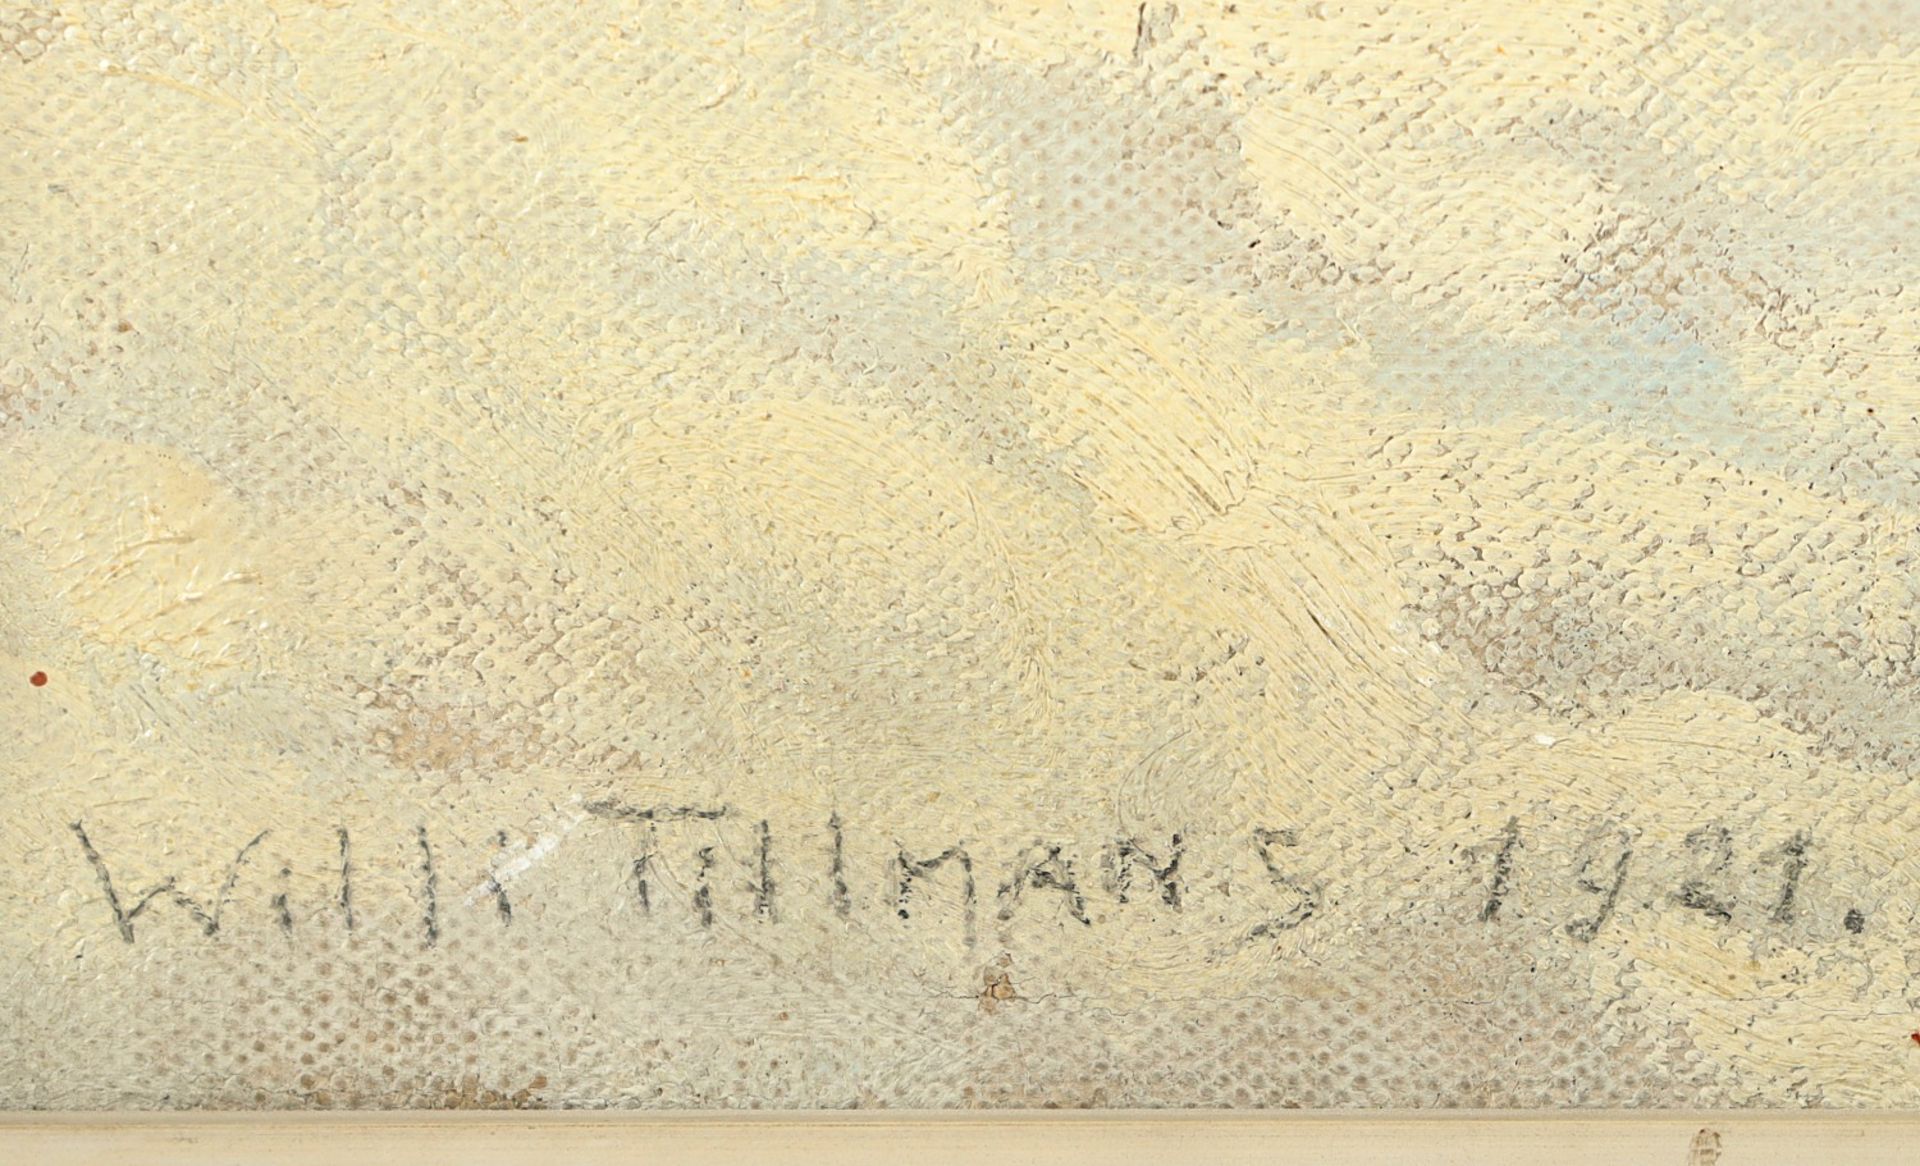 TILLMANN, Willi (1888-1985), "Blick - Bild 4 aus 5